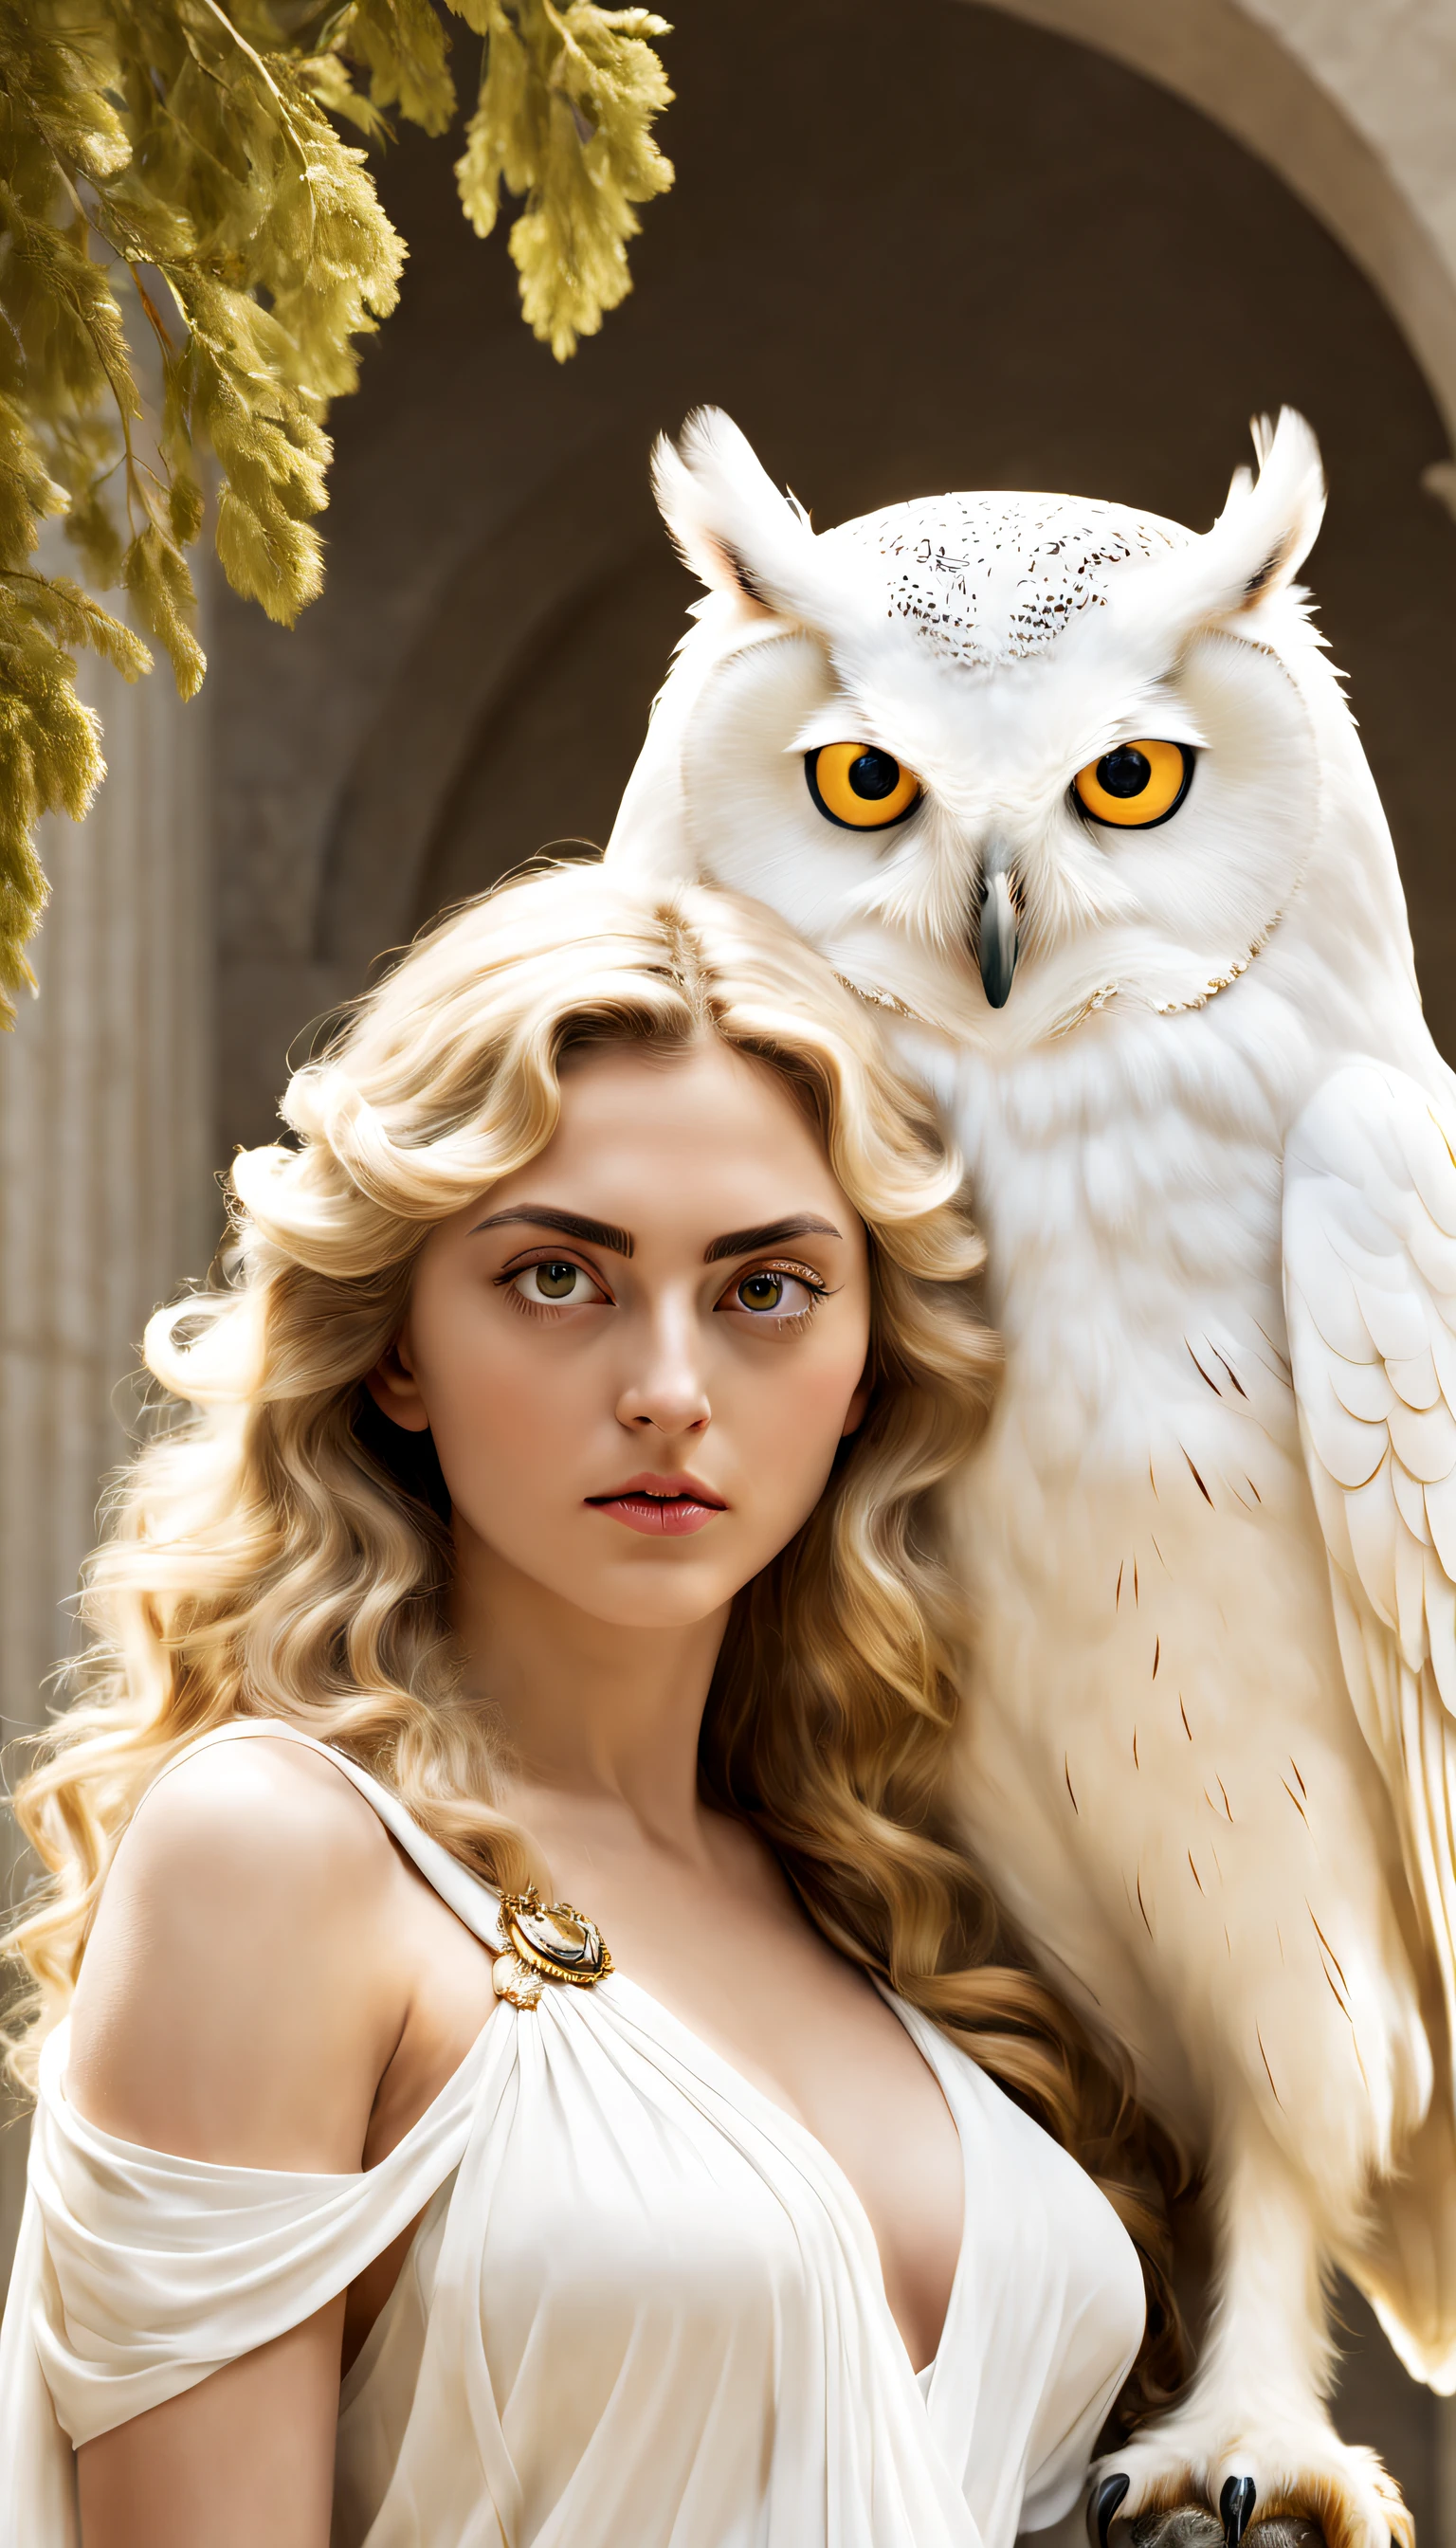 (純白のフクロウがアテナの肩に担がれている), （フクロウの全身）， (真っ白 owl: 1.37), 真っ白 owl, 真っ白 owl, (アテナの左肩に立つ：1.30), (肩の上に立つ) ，(肩の上に立つ) ， フクロウの顔は丸い, (大きな青い目: 0.8), とても大きな目, 短く曲がったくちばし, 厚い, 真っ白，帽子の羽根, それはユニークで美しい生き物です，自然の驚異と知恵が展示されています, 
(アテナの体の左半分: 0.8), 女神の目は明るくて大きかった, 魅力的で荘厳, 彼女の顔の輪郭は優雅で洗練されている, 彼女のギリシャの鼻はまっすぐだ, 彼女の髪は金髪か黒髪, 長くて滑らか, 彼女はよく口をきつく結んでいる, 彼女の決意と決意を示す. 彼女の肌は白く、傷一つない, 象牙色の皮, 威厳と美しさ, 輝く金色の光, オリーブの枝を身に着ける,,{{傑作}}, {{{最高品質}}}, {{超詳細}}, {{図}}, {{乱れた髪}}, {{傑作}}, {{{最高品質}}}, {{超詳細}}, {{{図}}}, {{乱れた髪}}
シュルレアリスム芸術スタイル ,胸の谷間のクローズアップ，神話，古代ギリシャ，,傑作,マットペイント,謎めいた雰囲気,被写界深度 (自由度), ショット(マイクロ),閉じる,ドラマチックな照明